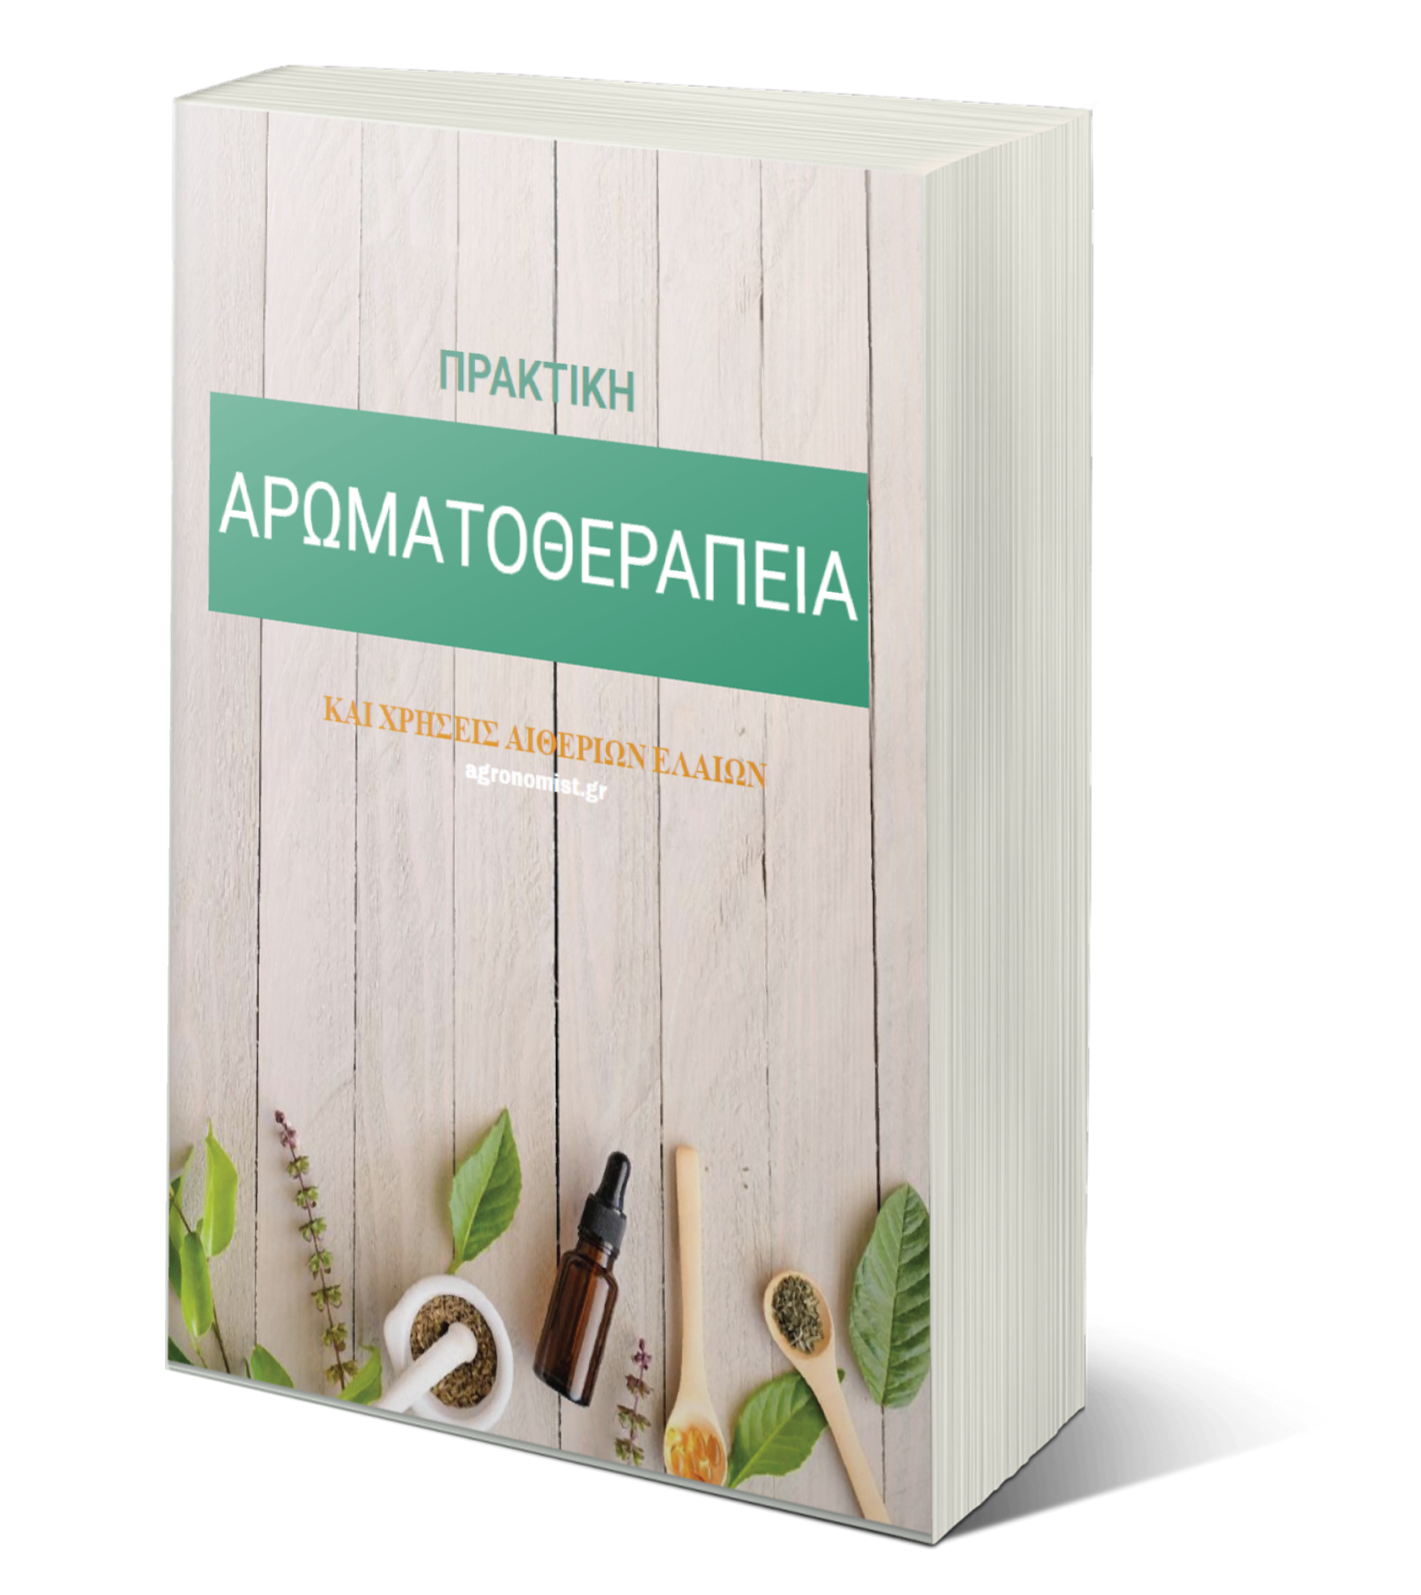 download | Agronomist.gr